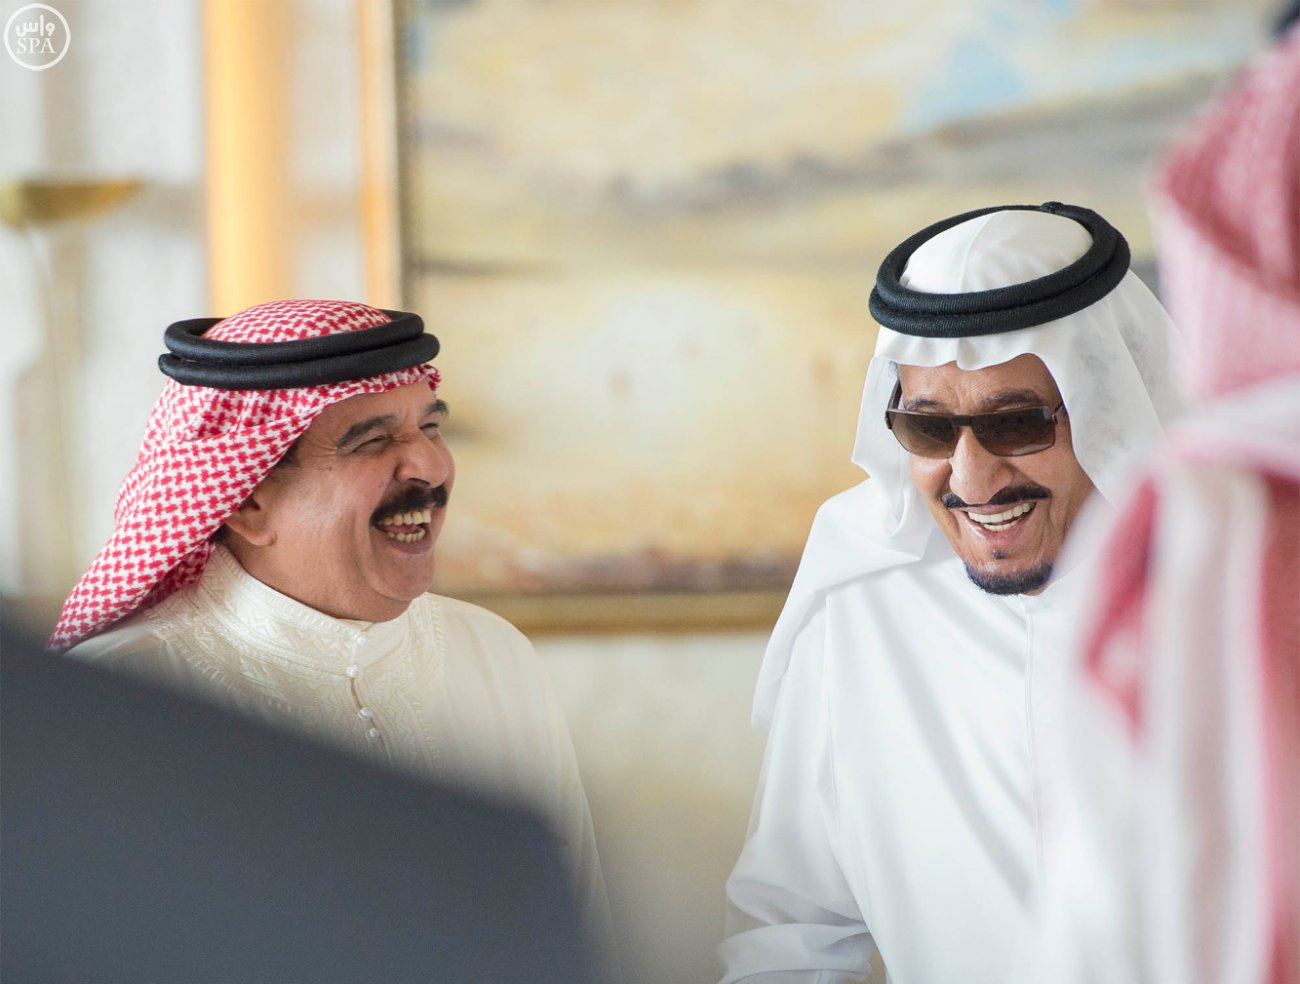 شاهد .. لقطات من استقبال الملك سلمان لأخيه ملك البحرين